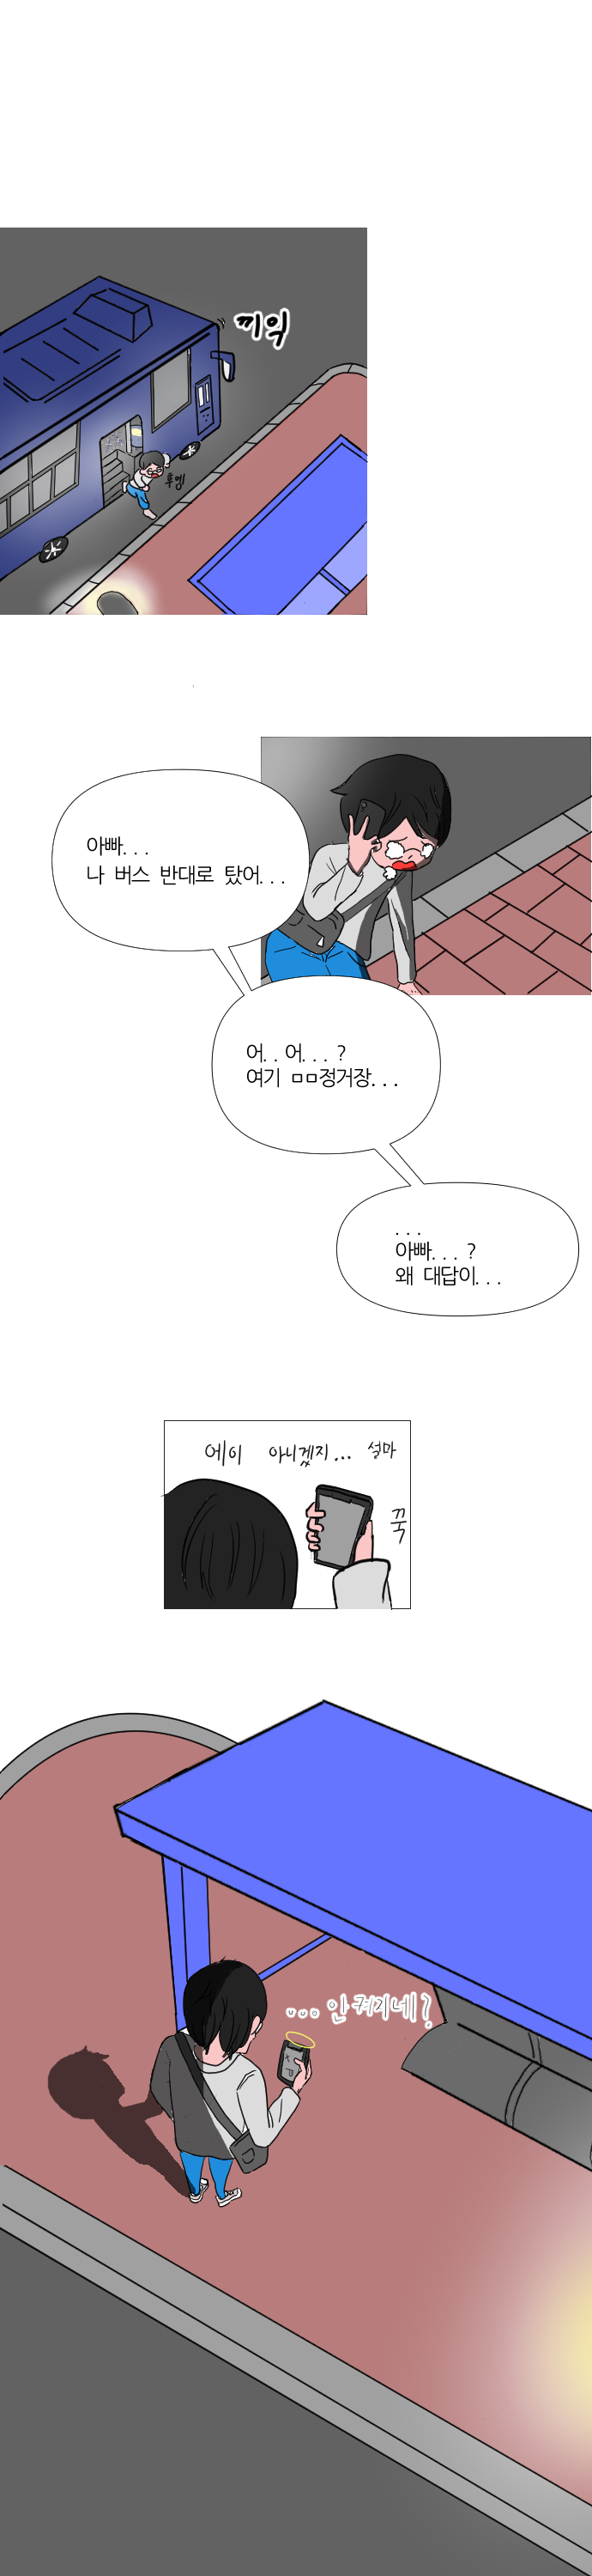 하이툰 - 박정우(3)